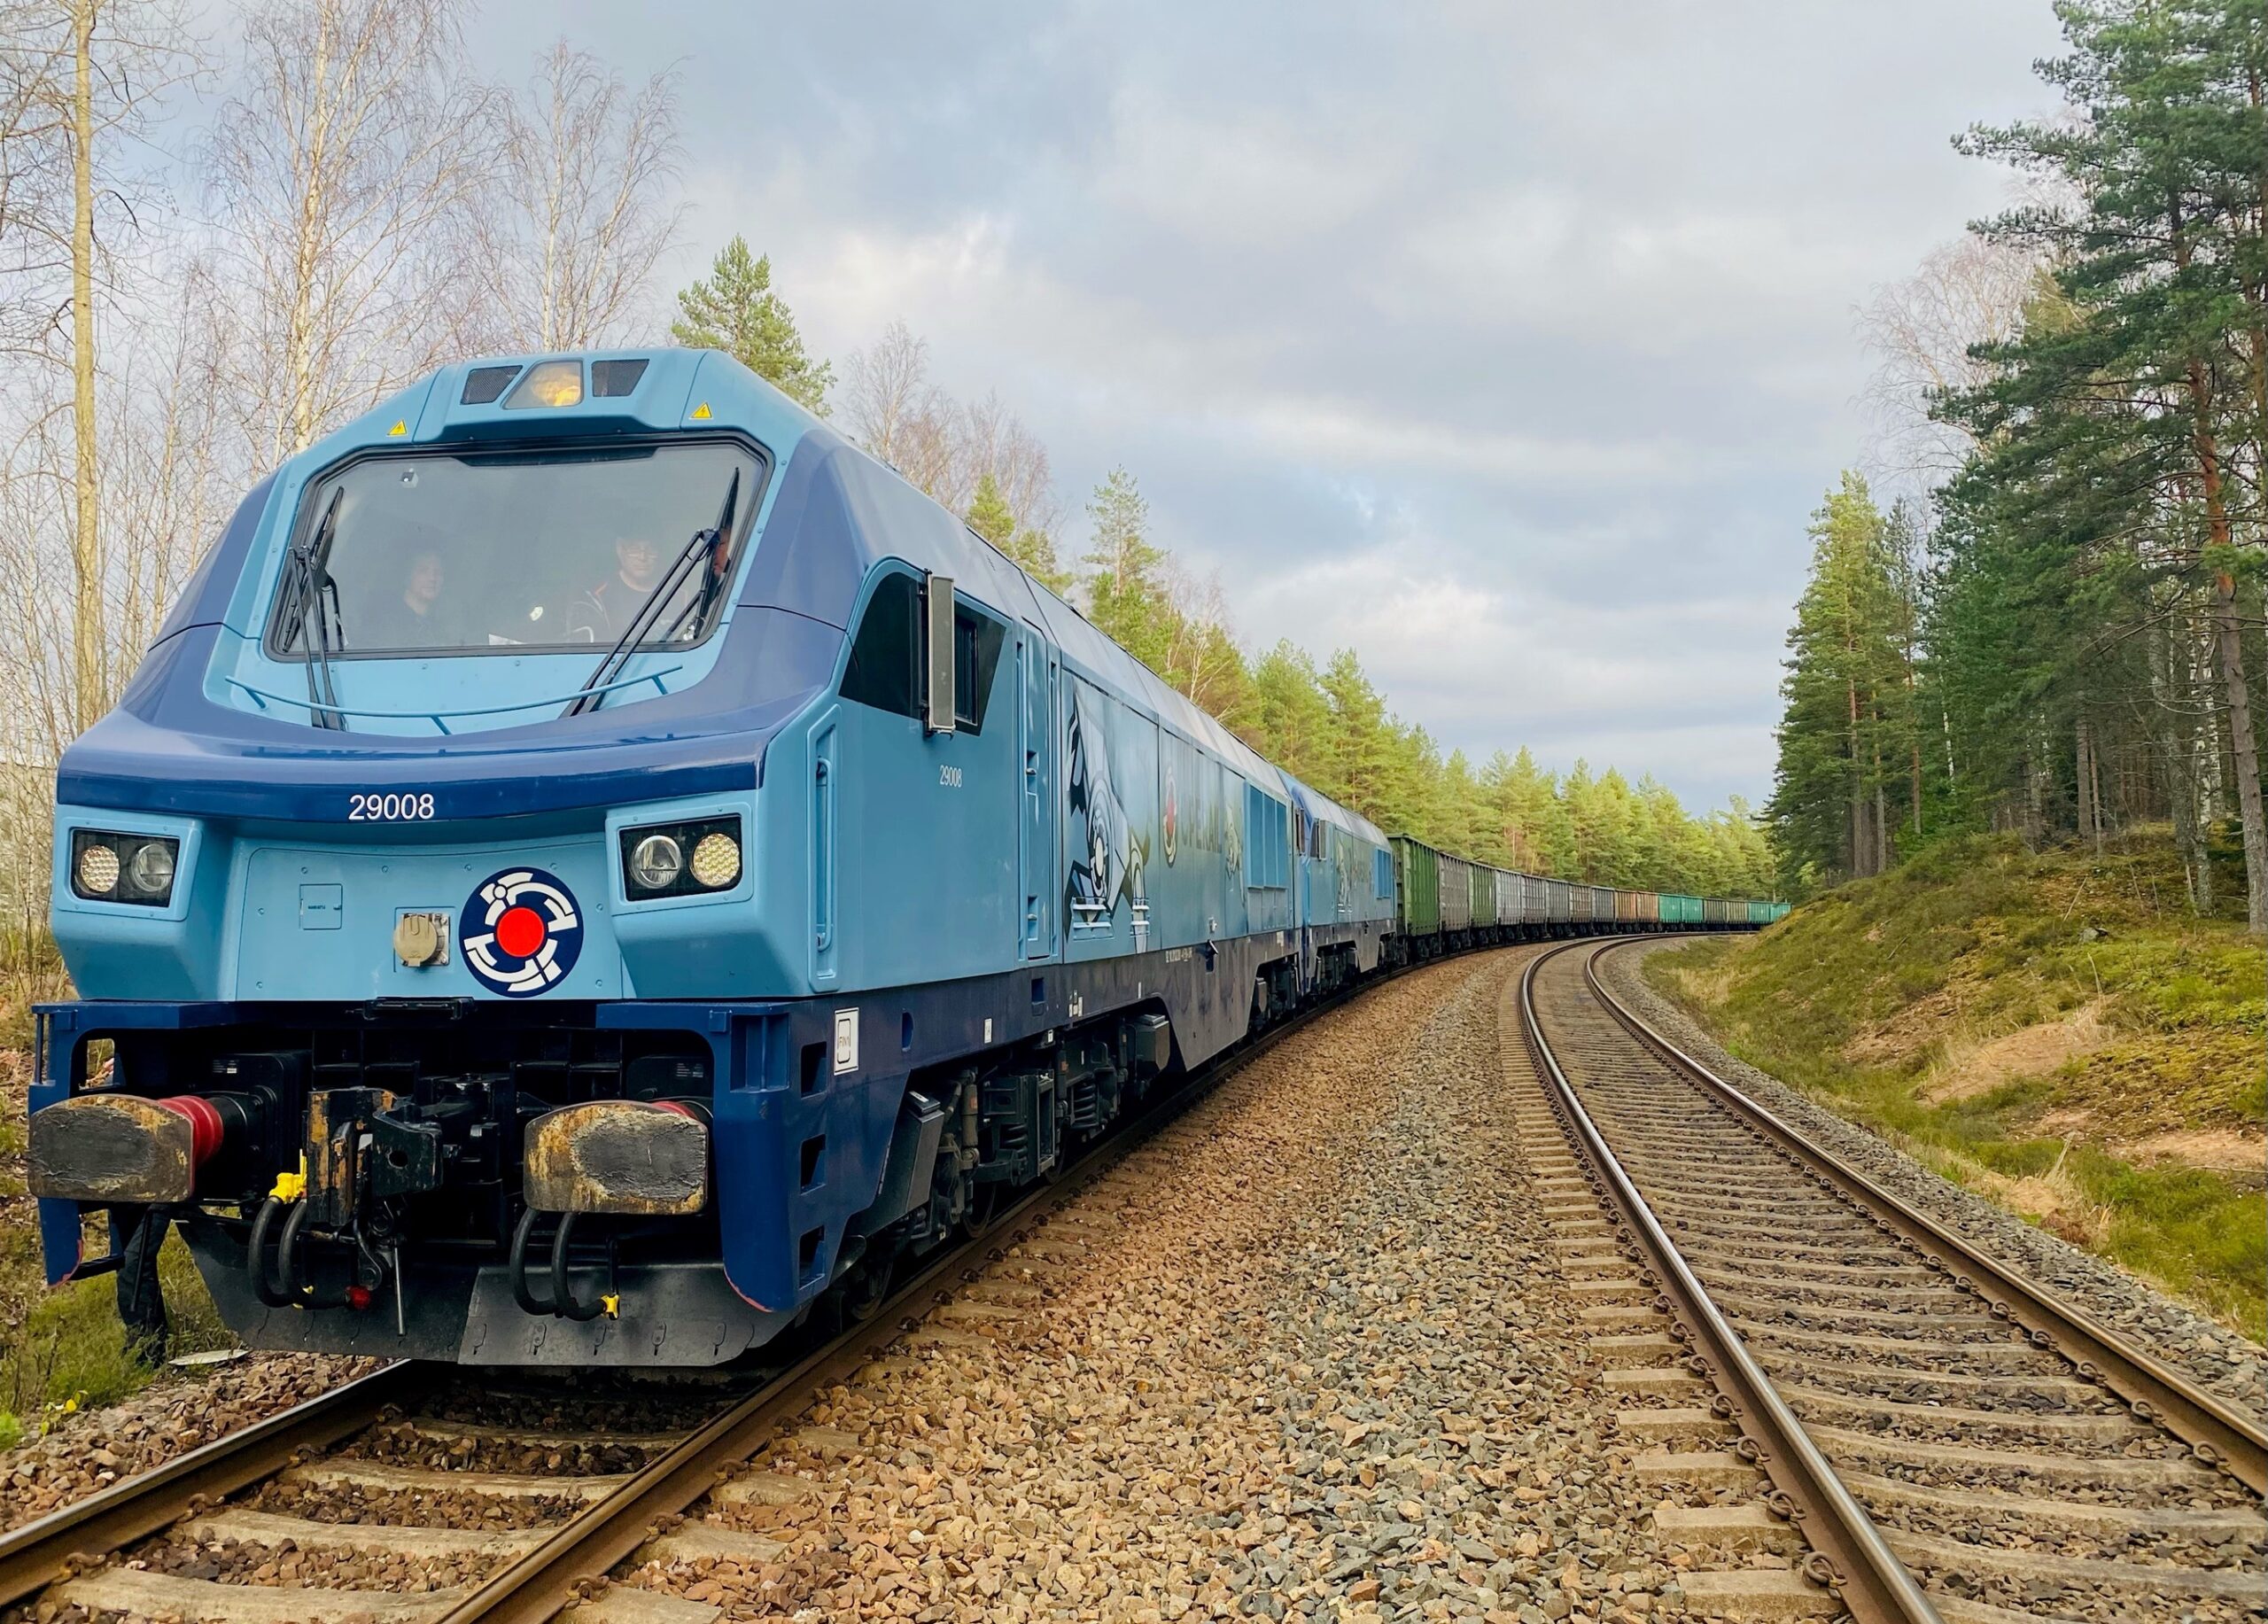 Компания Operail приступила к железнодорожным перевозкам в Финляндии и сотрудничеству с ведущим портовым оператором Rauanheimo